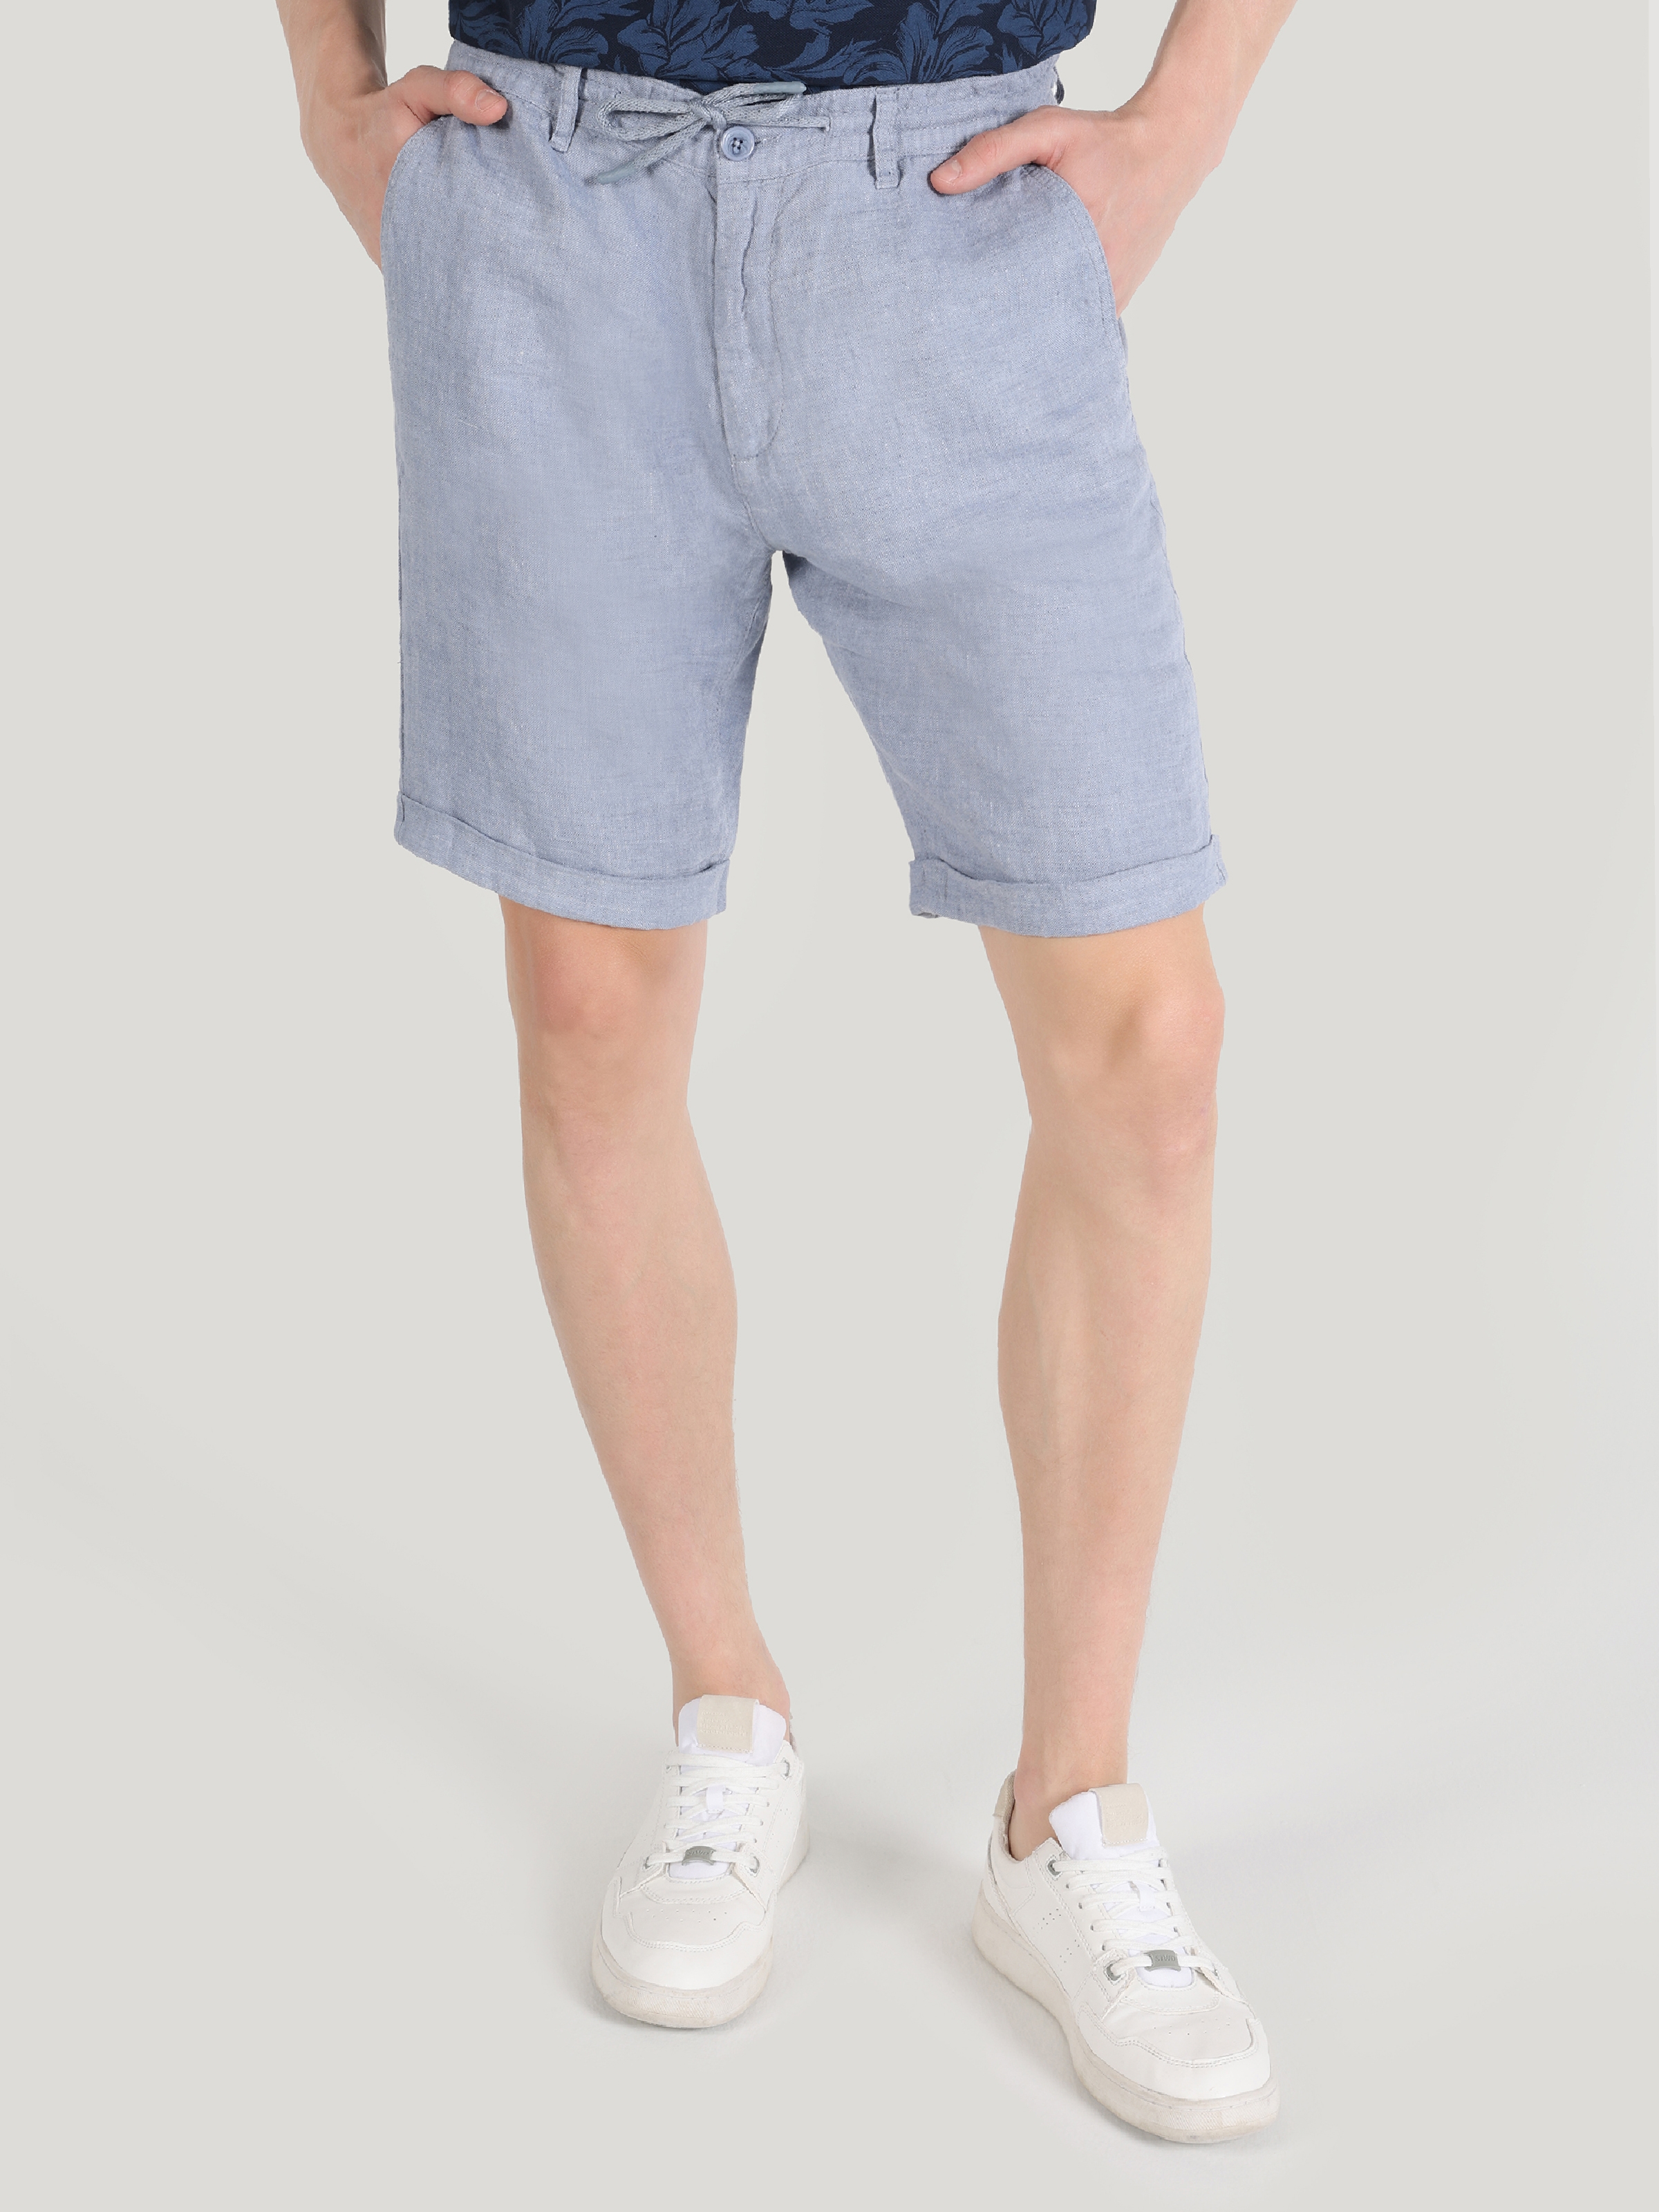 Afișați detalii pentru Short / Pantaloni Scurti De Barbati Albastru Regular Fit  CL1063618